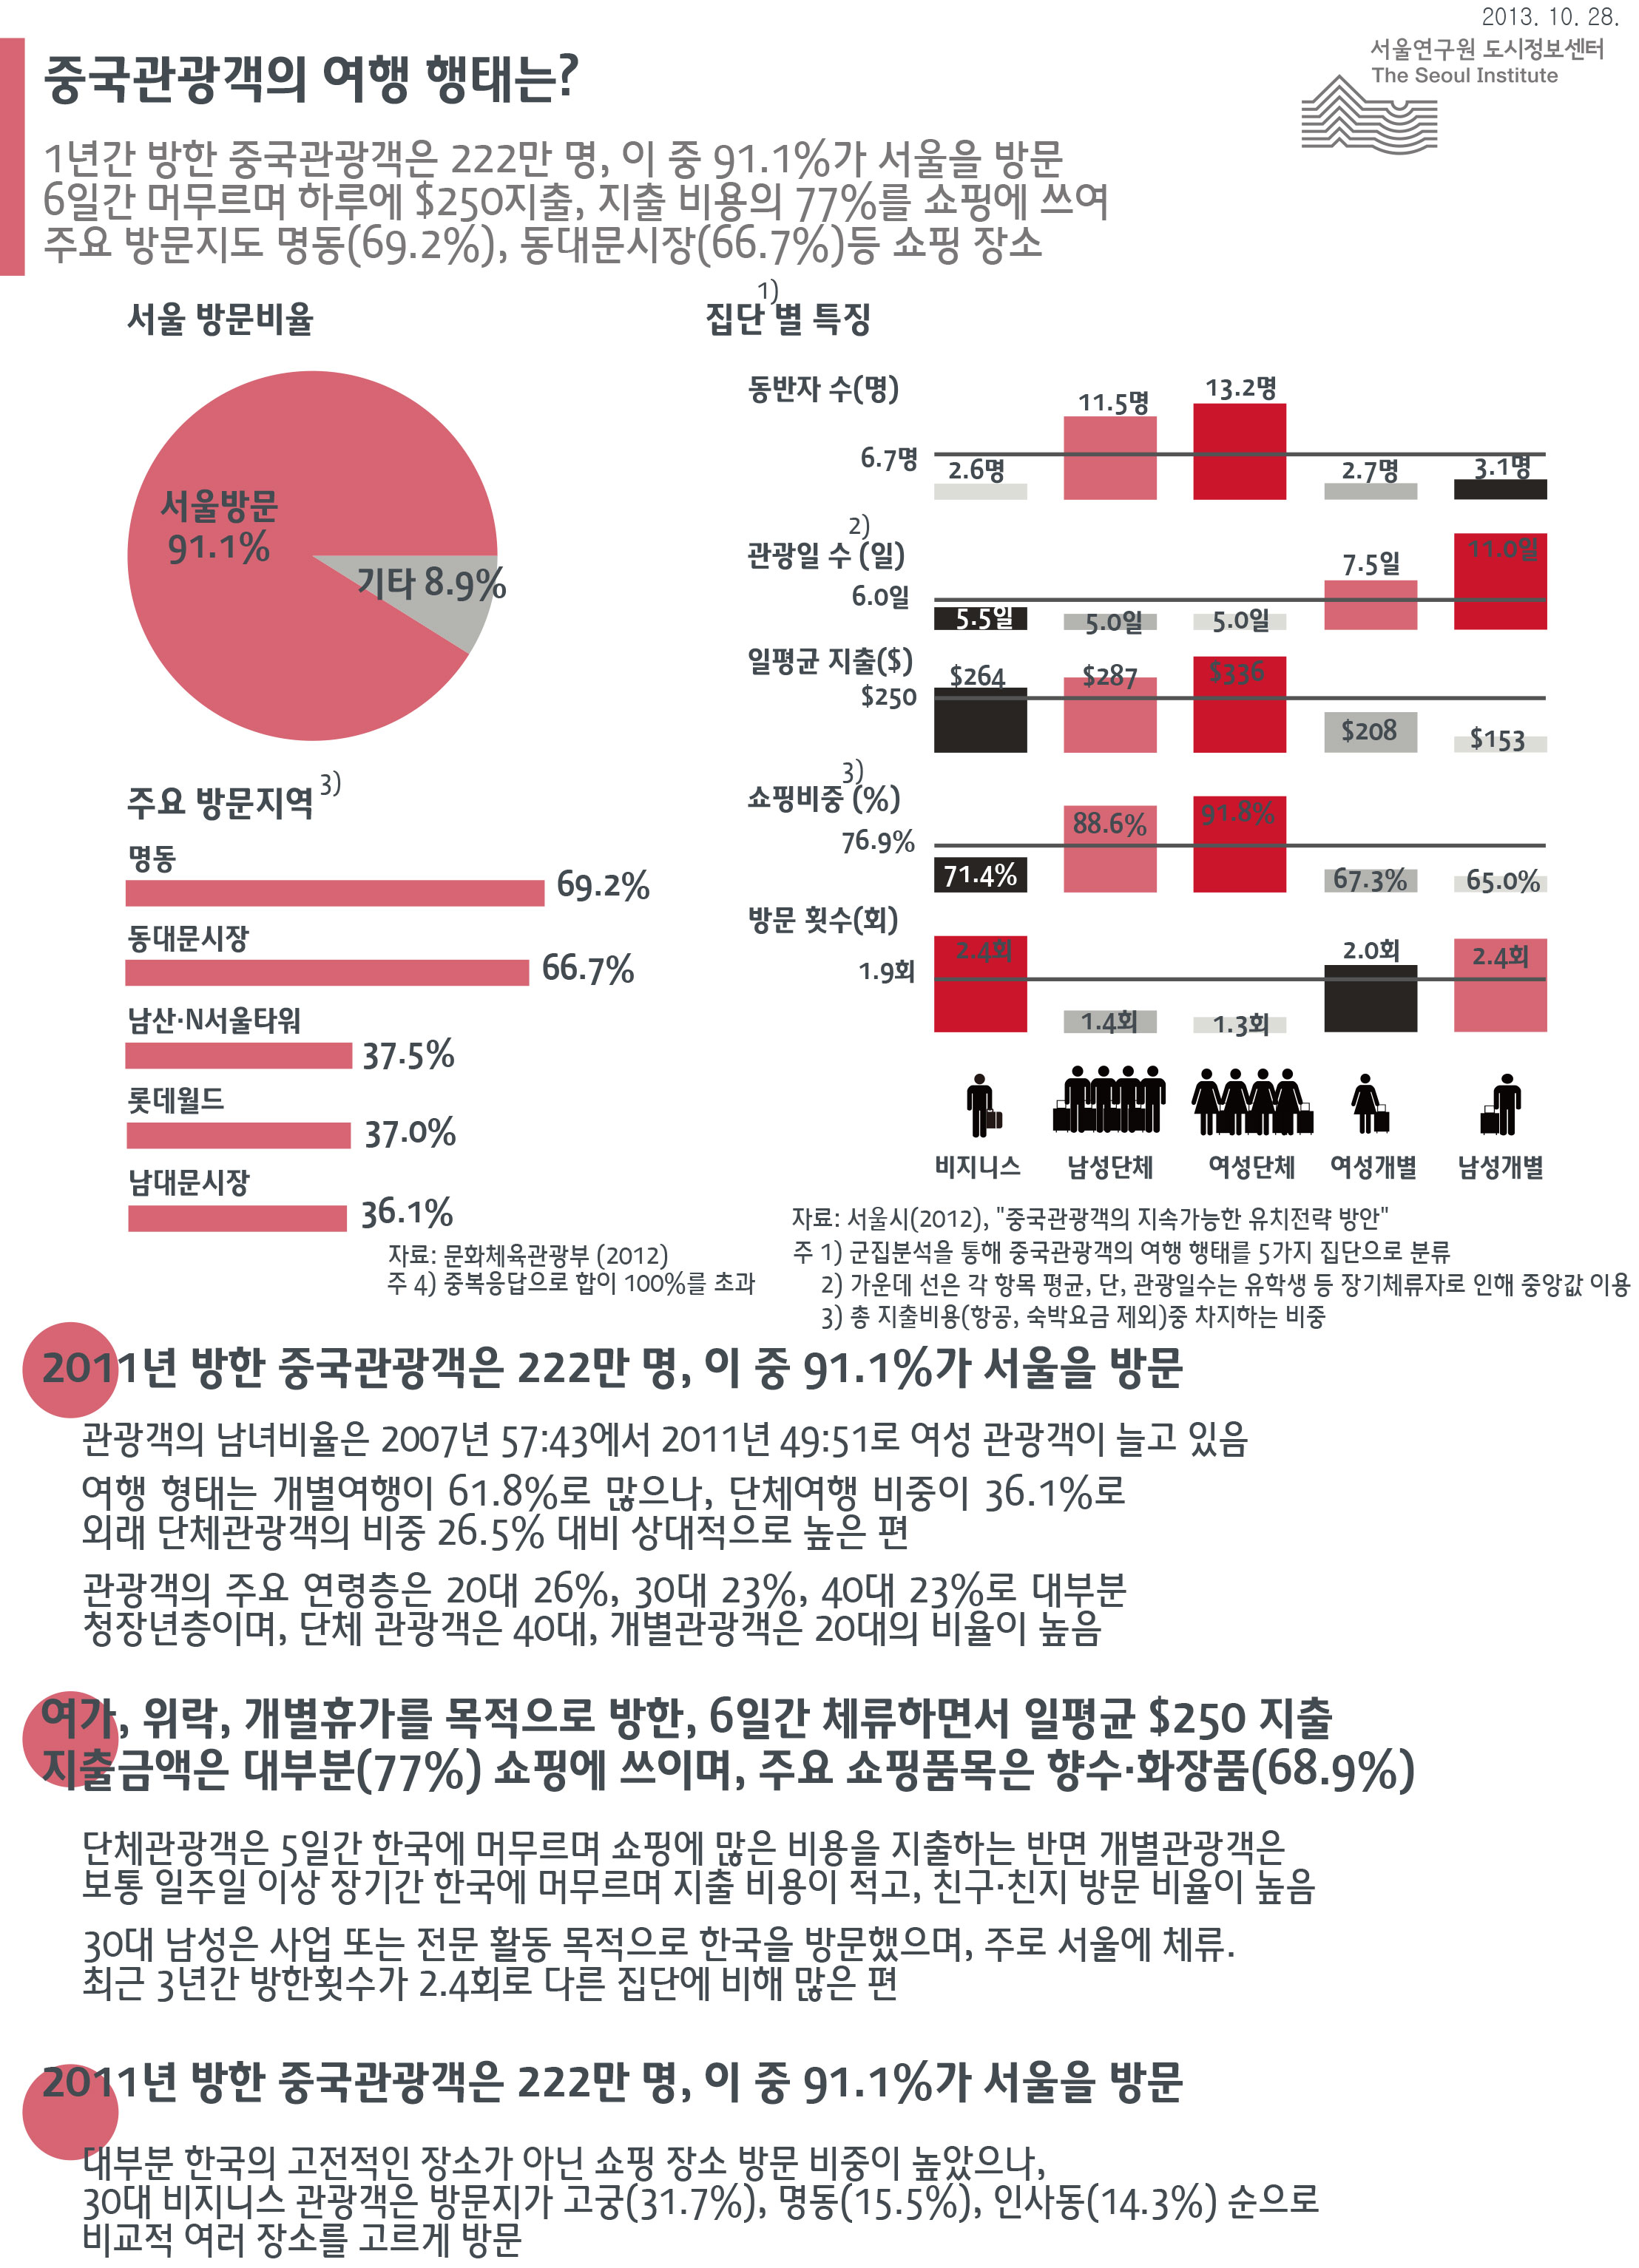 중국관광객의 여행 행태는? 서울인포그래픽스 제57호 2013년 10월 28일 2011년 방한 중국관광객은 222만 명, 이 중 91.1%가 서울을 방문, 6일간 머무르며 하루 평균 $250지출, 지출 비용의 77%를 쇼핑에 써, 주요 방문지는 명동(69.2%), 동대문시장(66.7%)으로 정리 될 수 있습니다. 인포그래픽으로 제공되는 그래픽은 하단에 표로 자세히 제공됩니다.